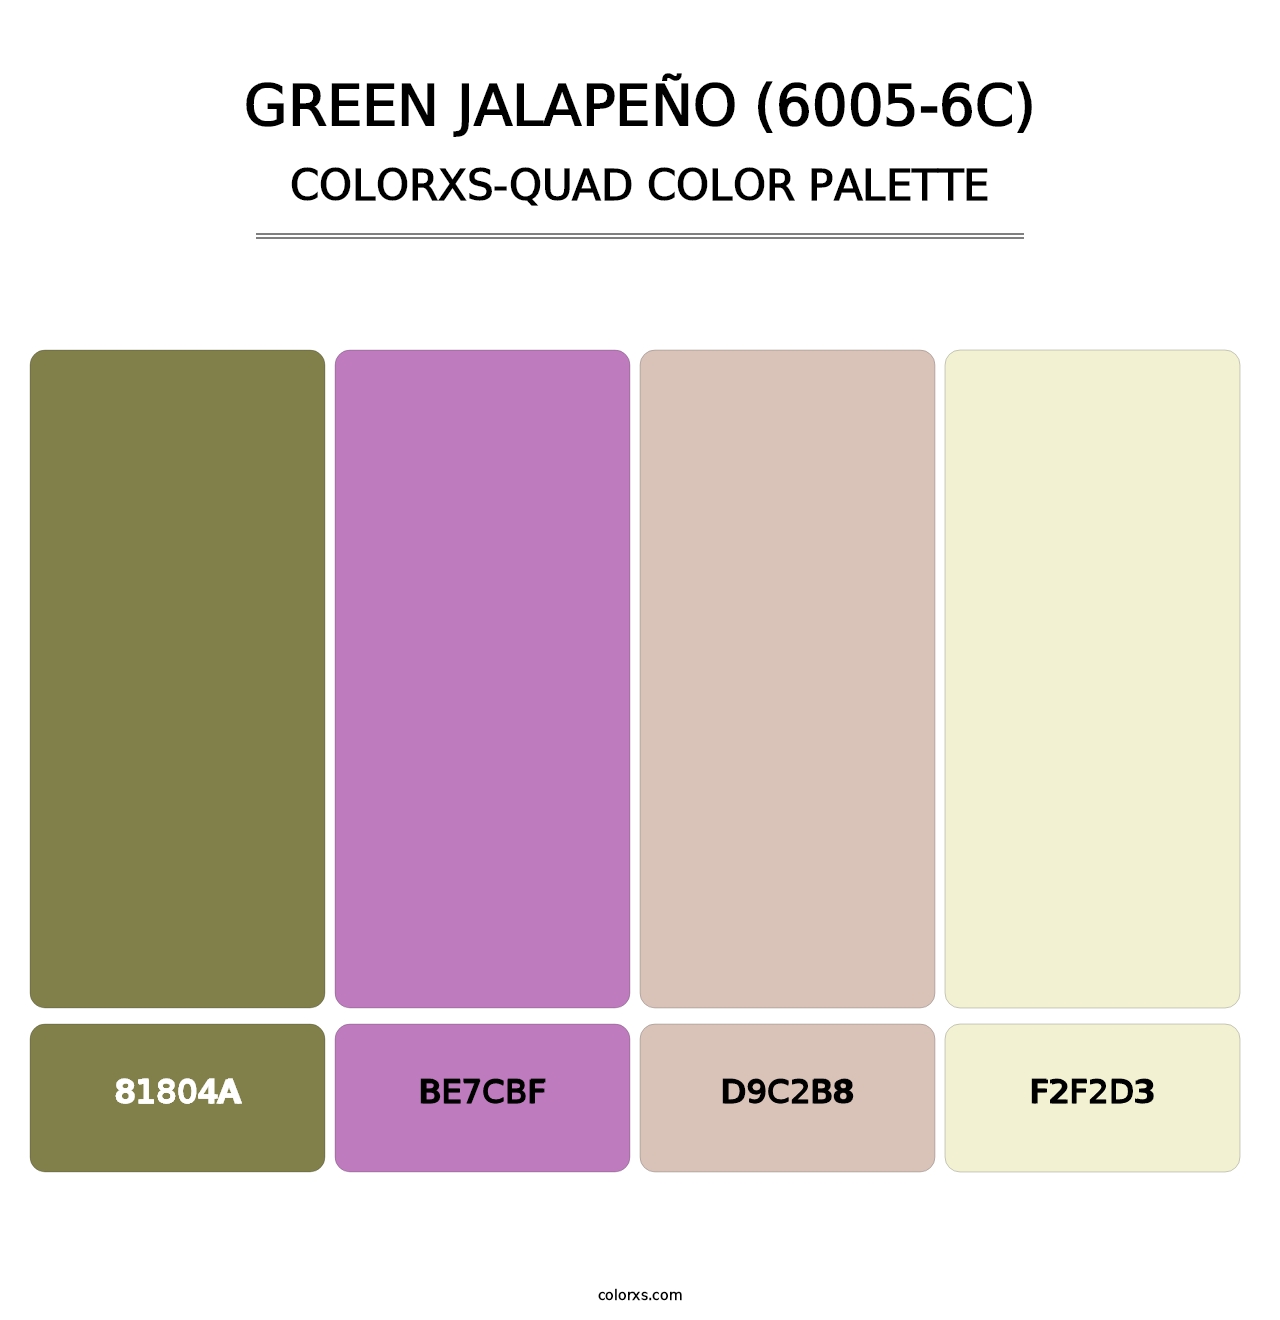 Green Jalapeño (6005-6C) - Colorxs Quad Palette